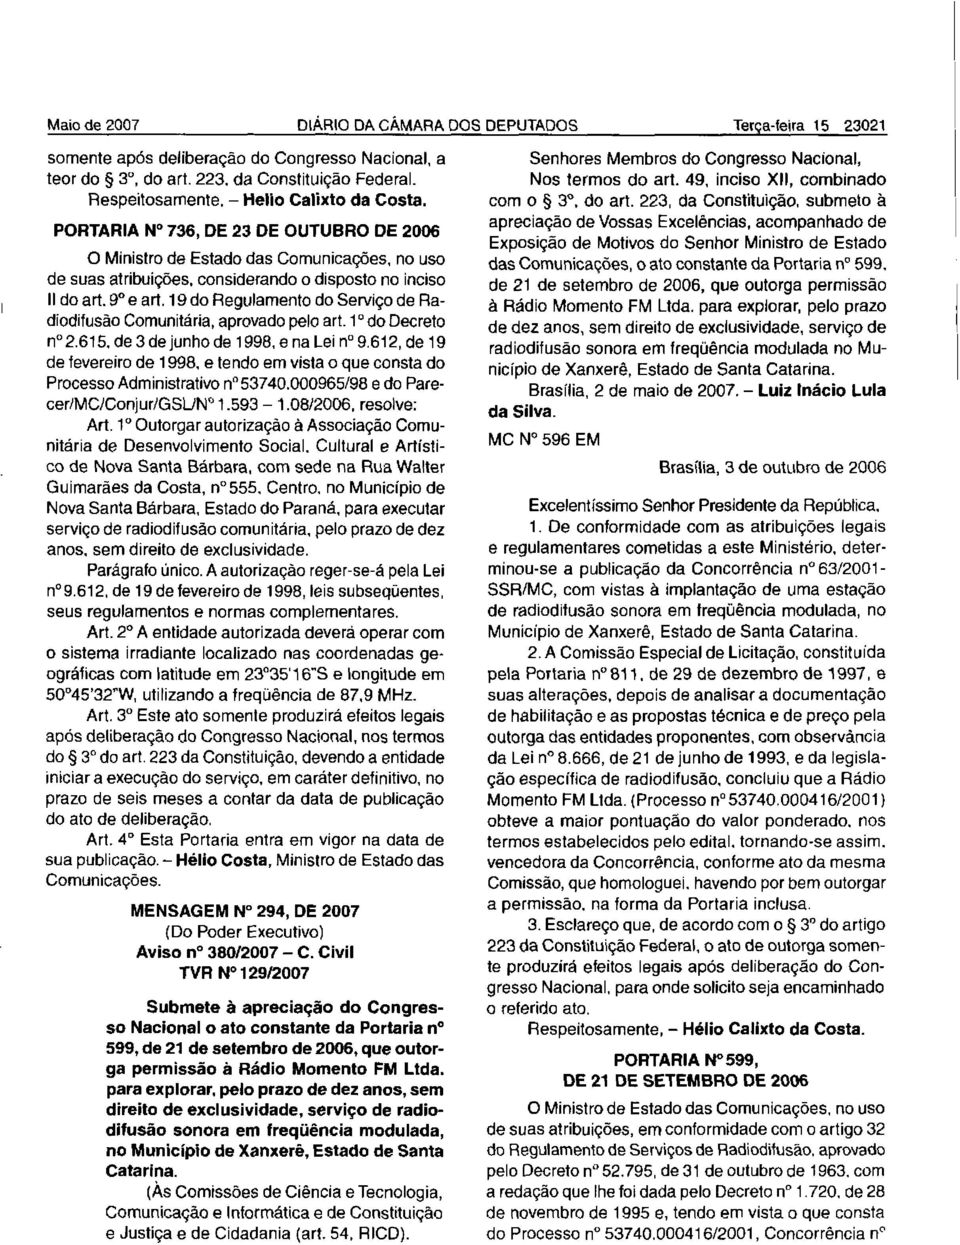 19 do Regulamento do Serviço de Radiodifusão Comunitária, aprovado pelo art. 1 do Decreto n 2.615. de 3 de junho de 1998, e na Lei n 9.612, de 19 de fevereiro de 1998.